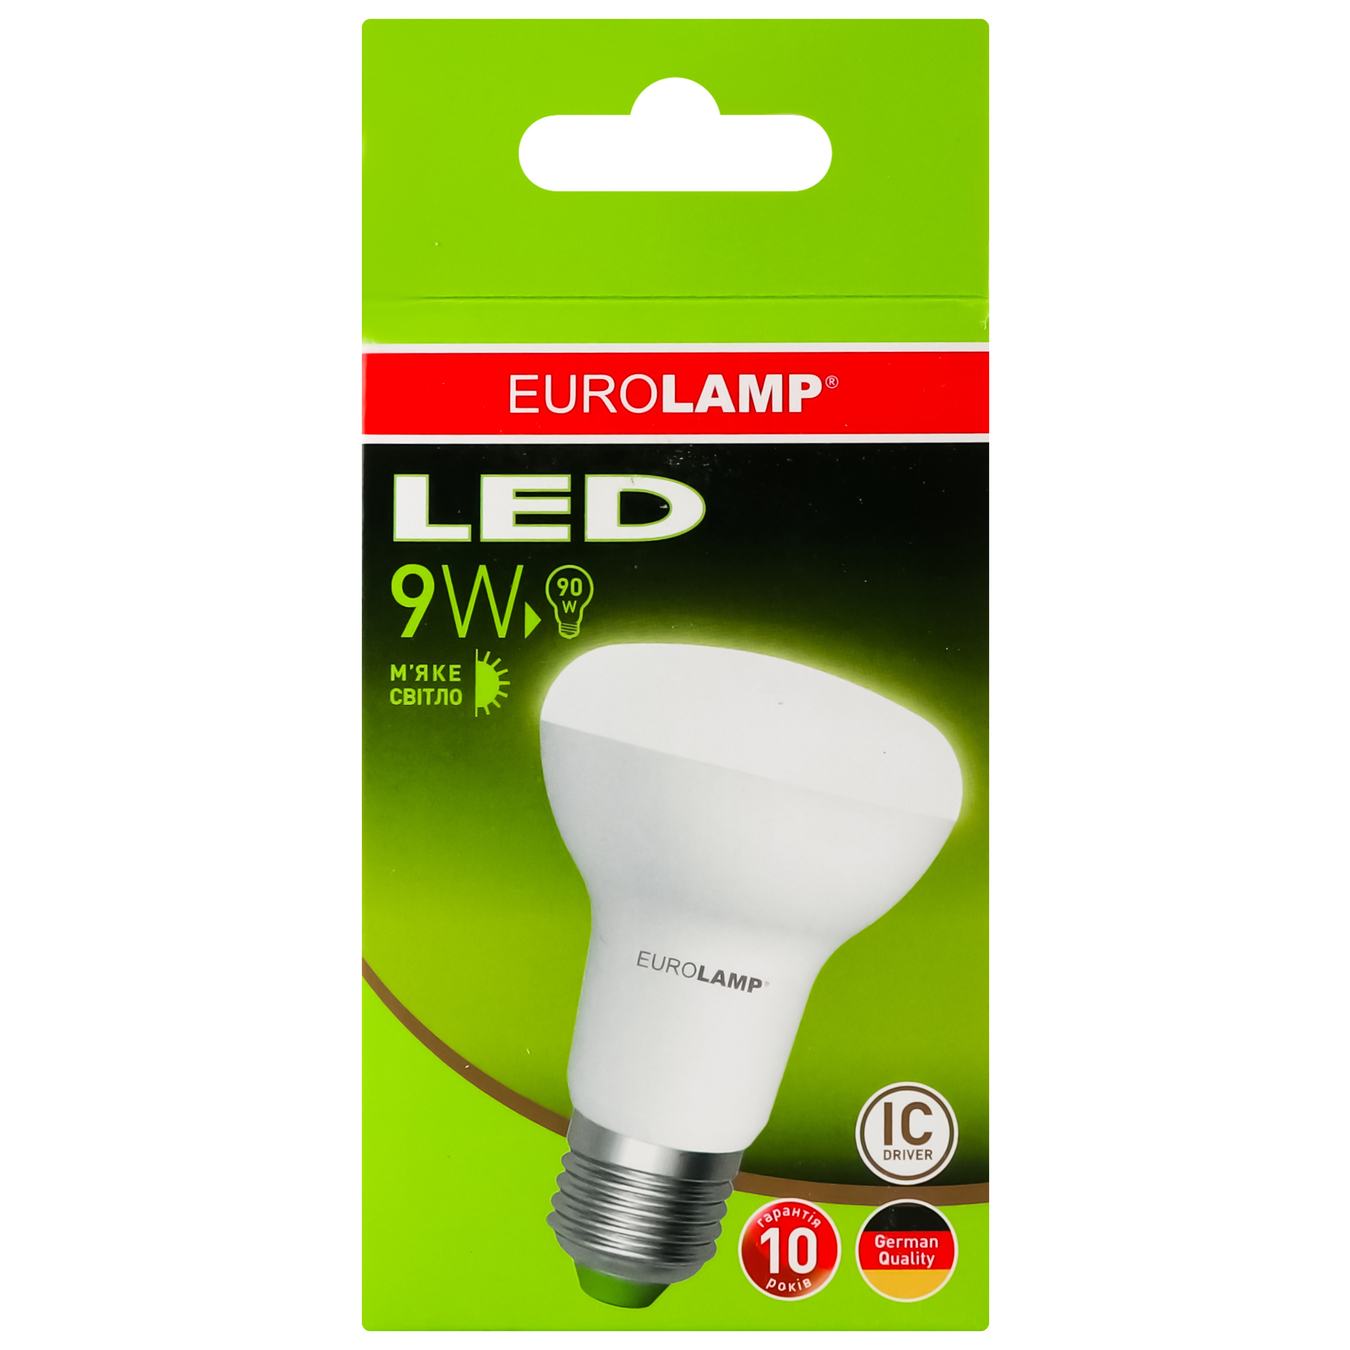 LED lamp Eurolamp eko P R63 9W 3000K E27 2